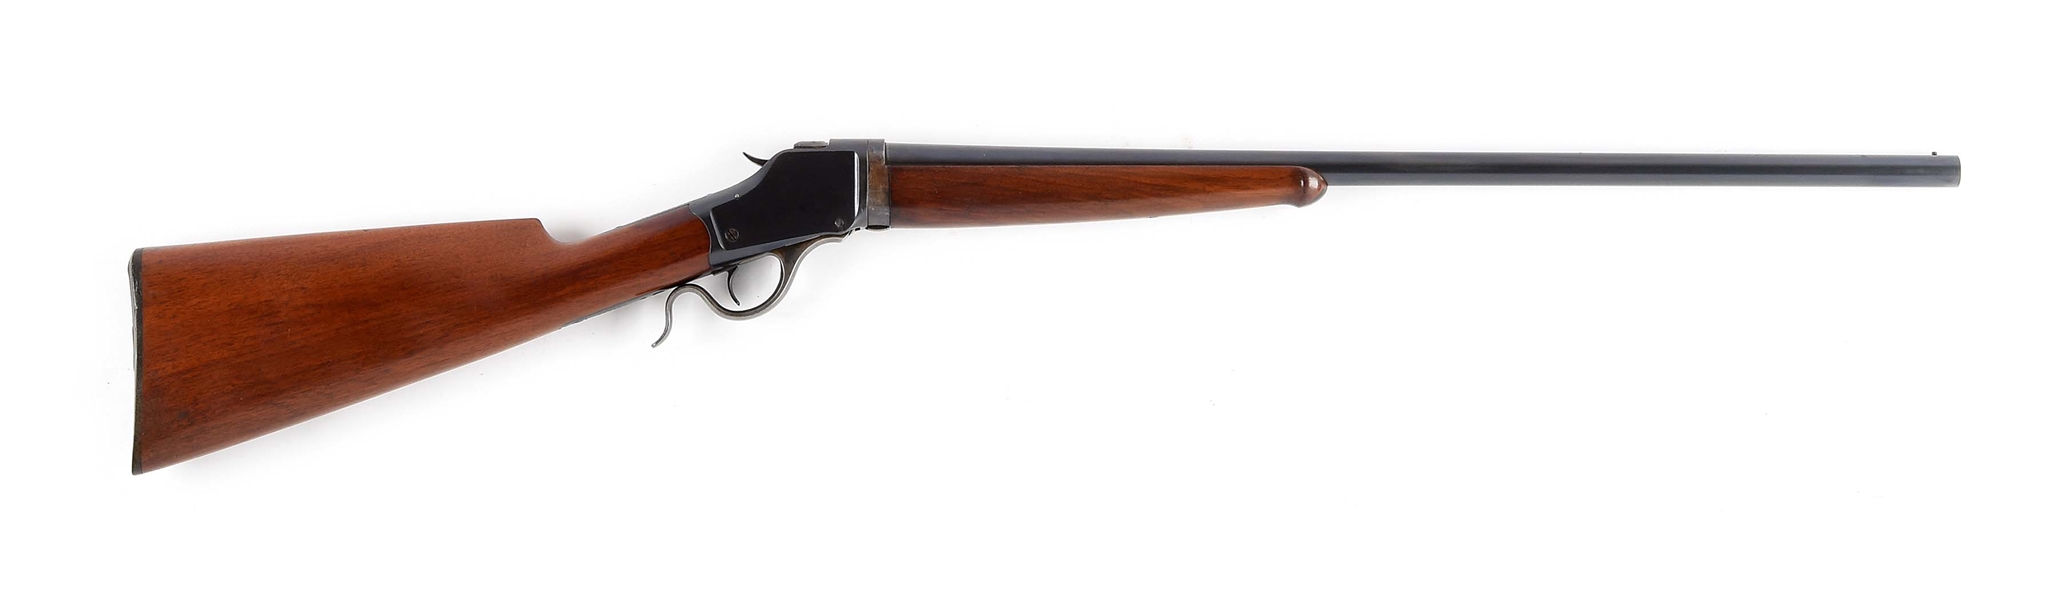 (C) SCARCE WINCHESTER MODEL 1885 HIGH WALL 20 BORE SINGLE SHOT SHOTGUN.